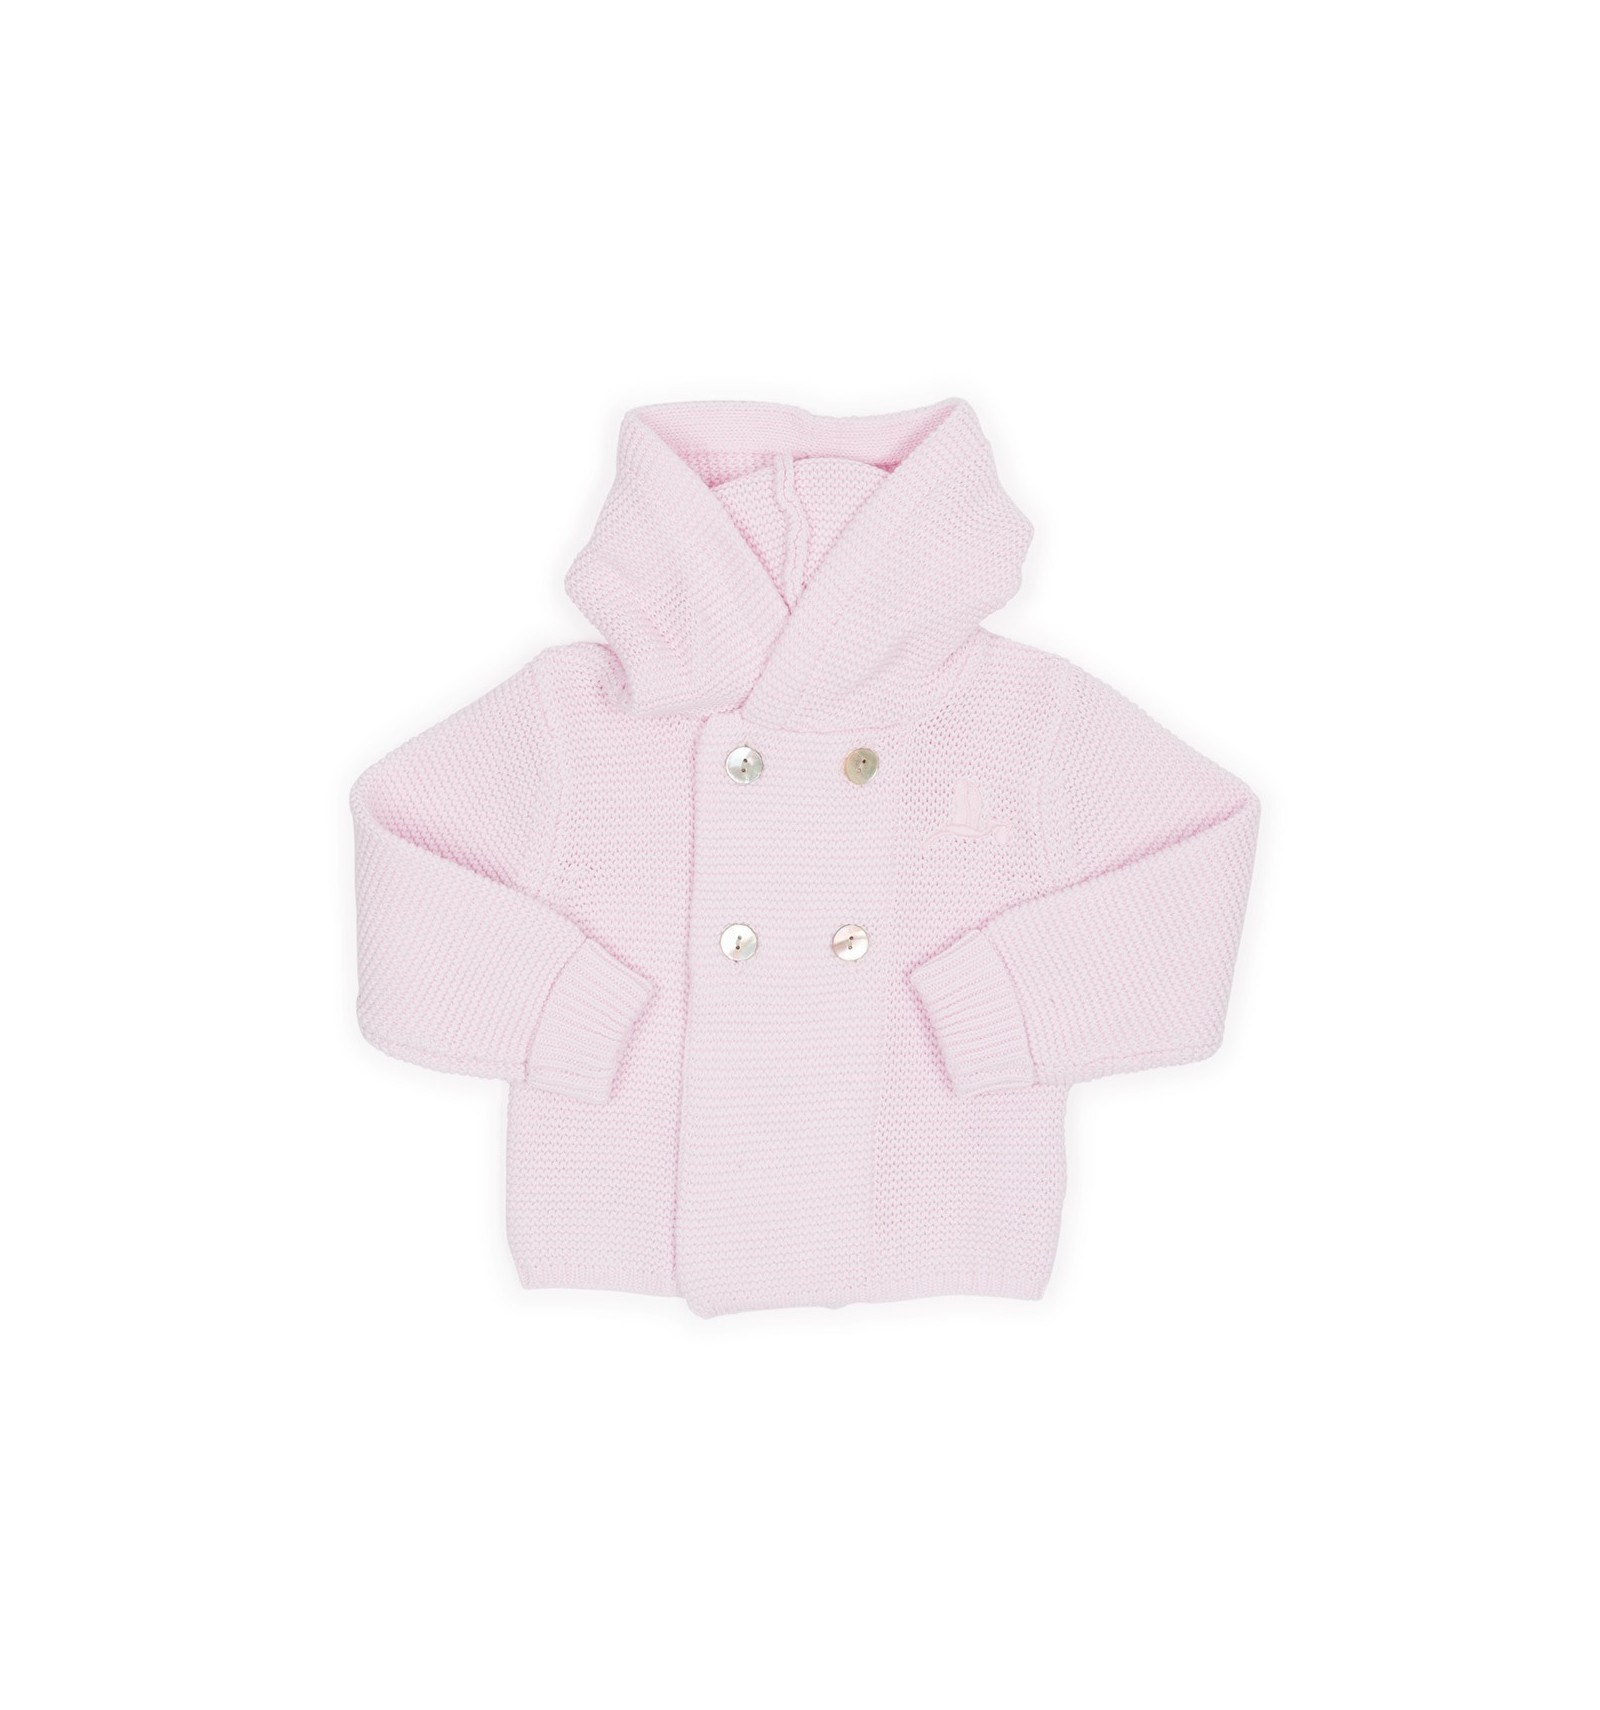 Veste classique tricot pour bébé rose